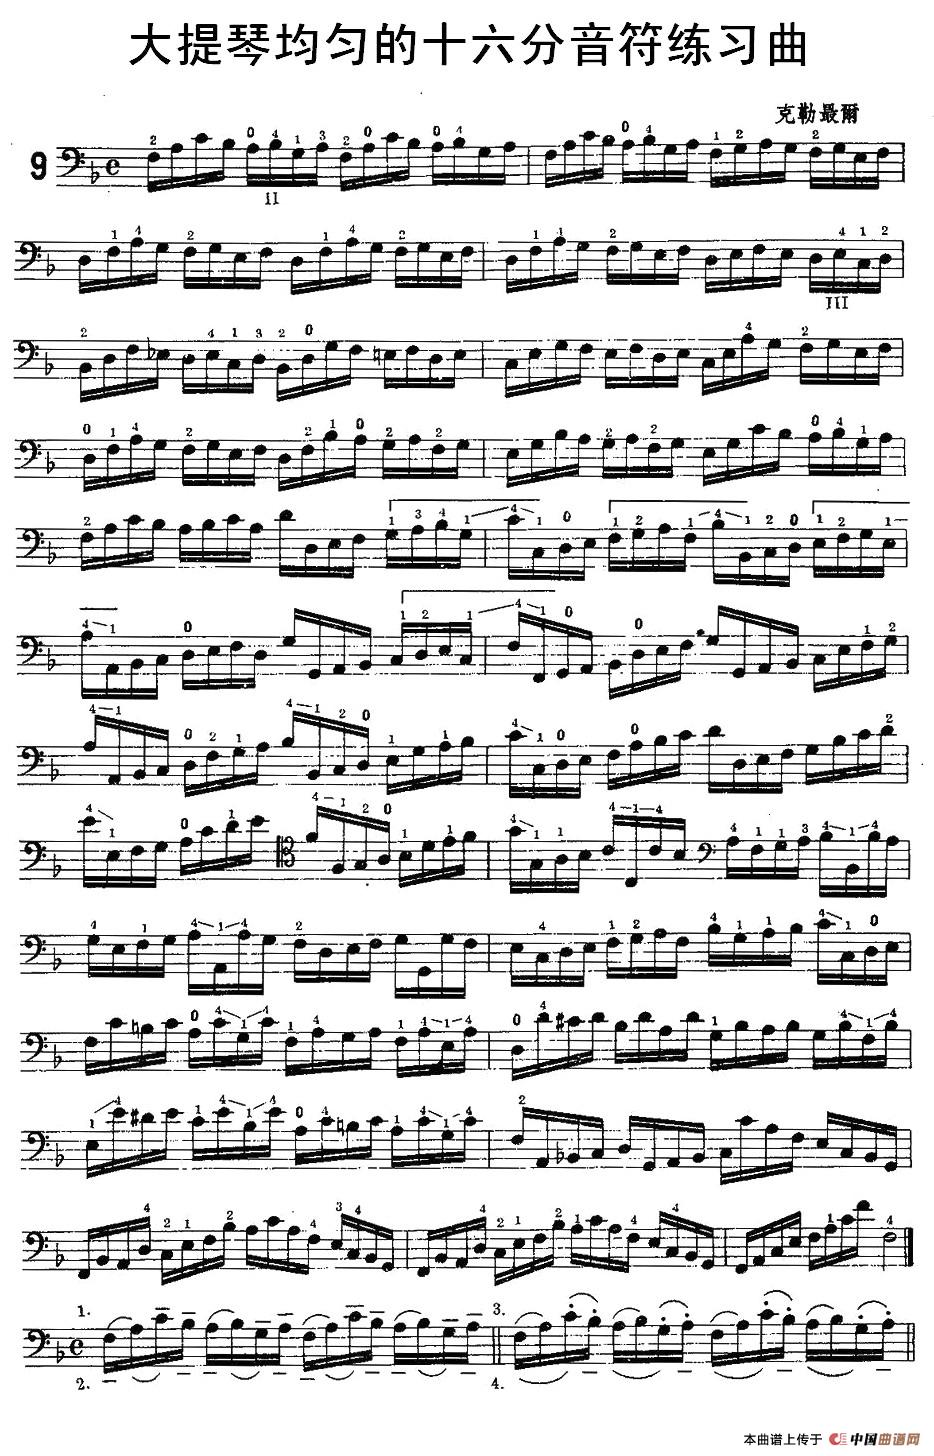 大提琴均匀的十六分音符练习曲